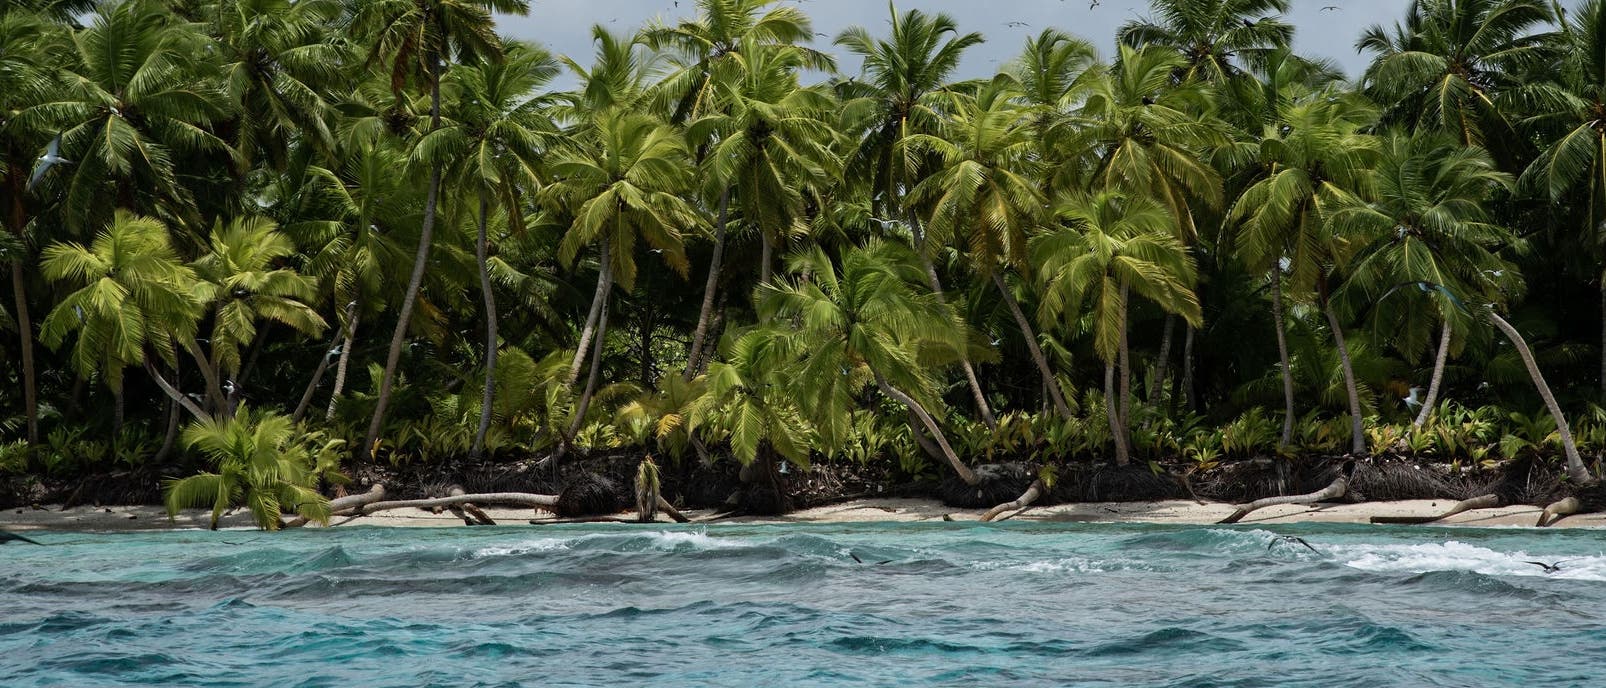 Blick vom Meer auf eine tropische Insel, über der zahlreiche Seevögel am bedeckten Himmel fliegen. Der helle Strand wird von zahlreichen Palmen gesäumt, im Vordergrund rollen sanfte Wellen über das blaue Meer.